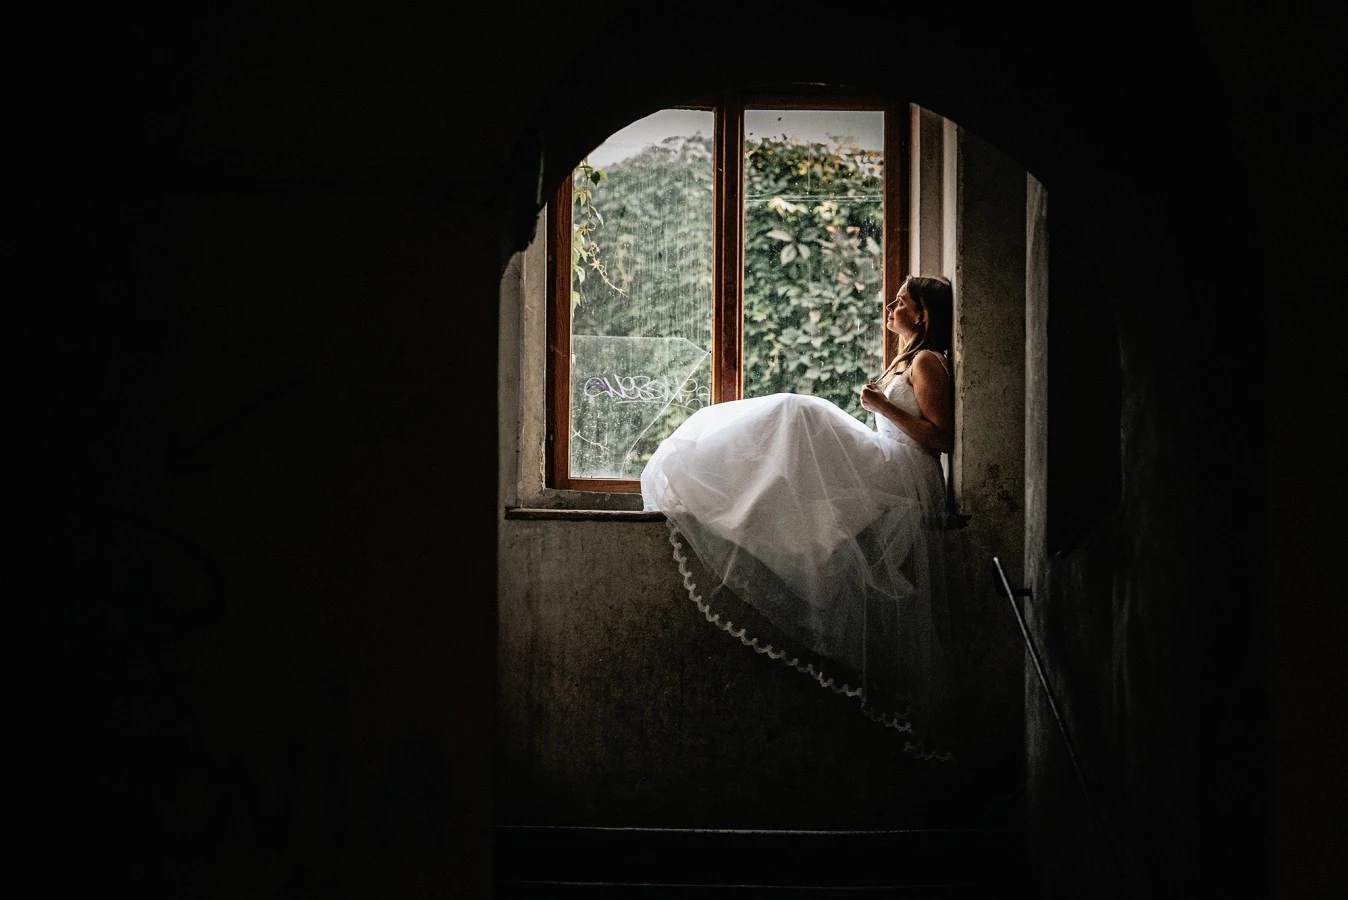 fotograf lodz zatrzymacchwile portfolio zdjecia zdjecia slubne inspiracje wesele plener slubny sesja slubna